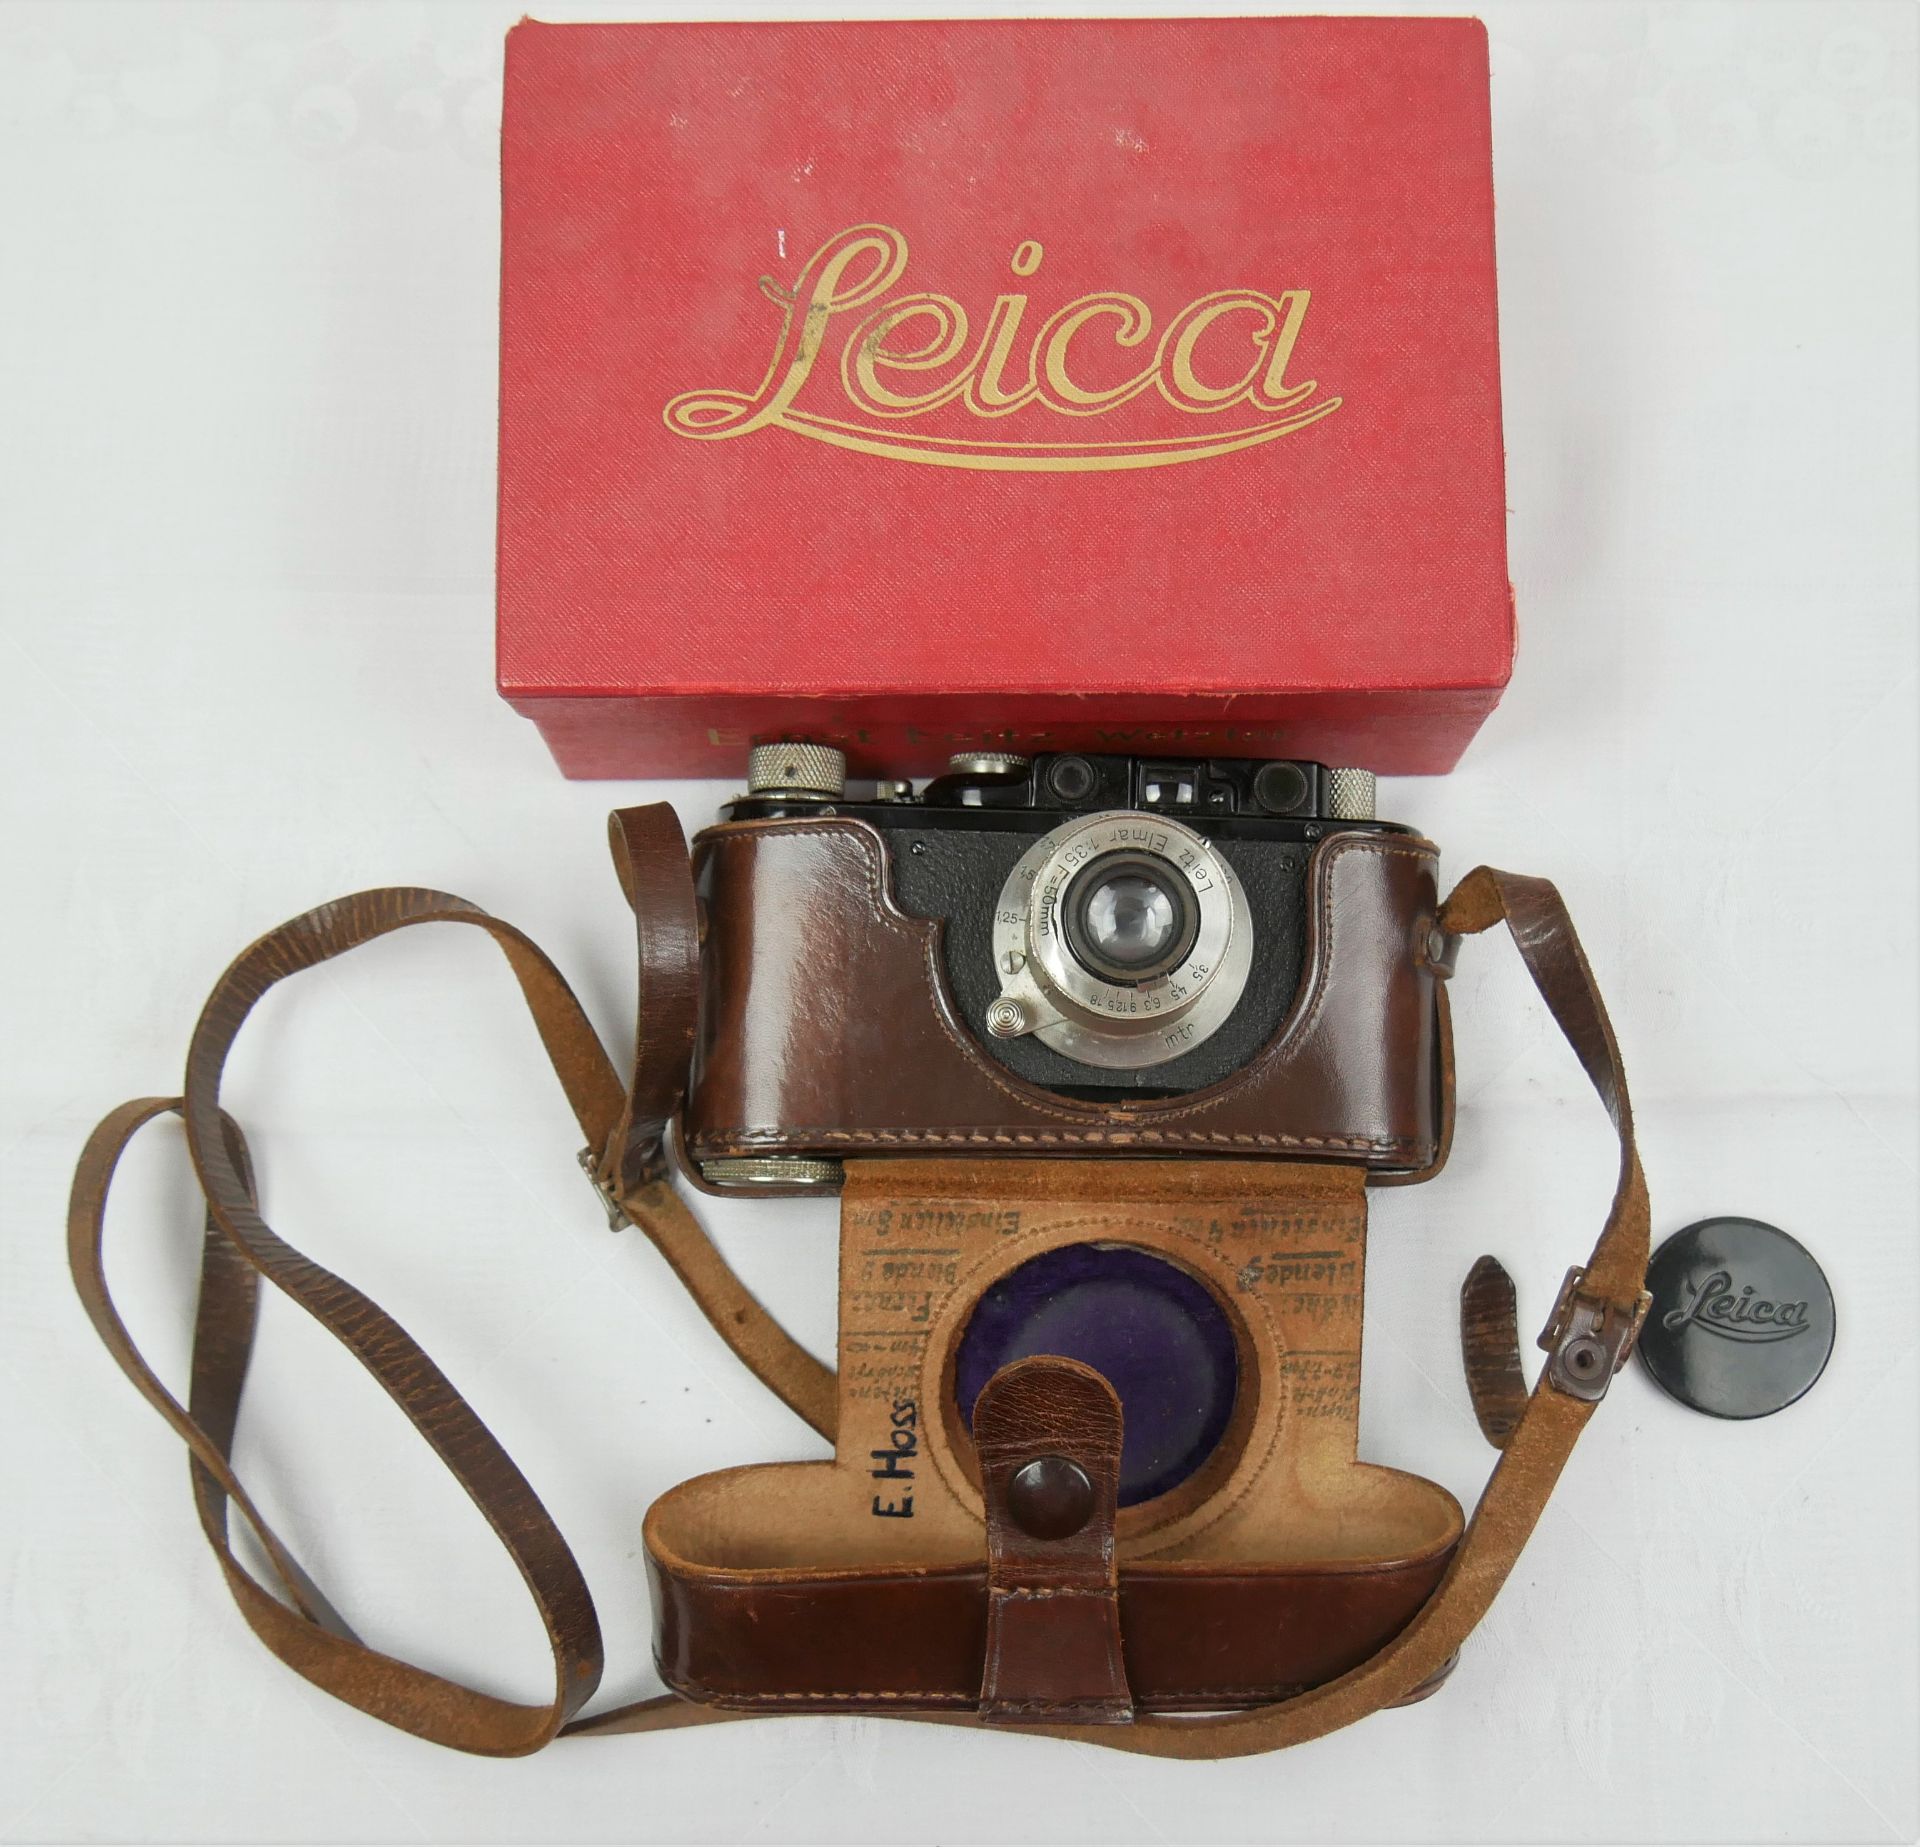 Leica Kamera Ernst Leitz Wetzlar D.R.F. No. 96727, Objektiv aussen beschädigt. In der Original